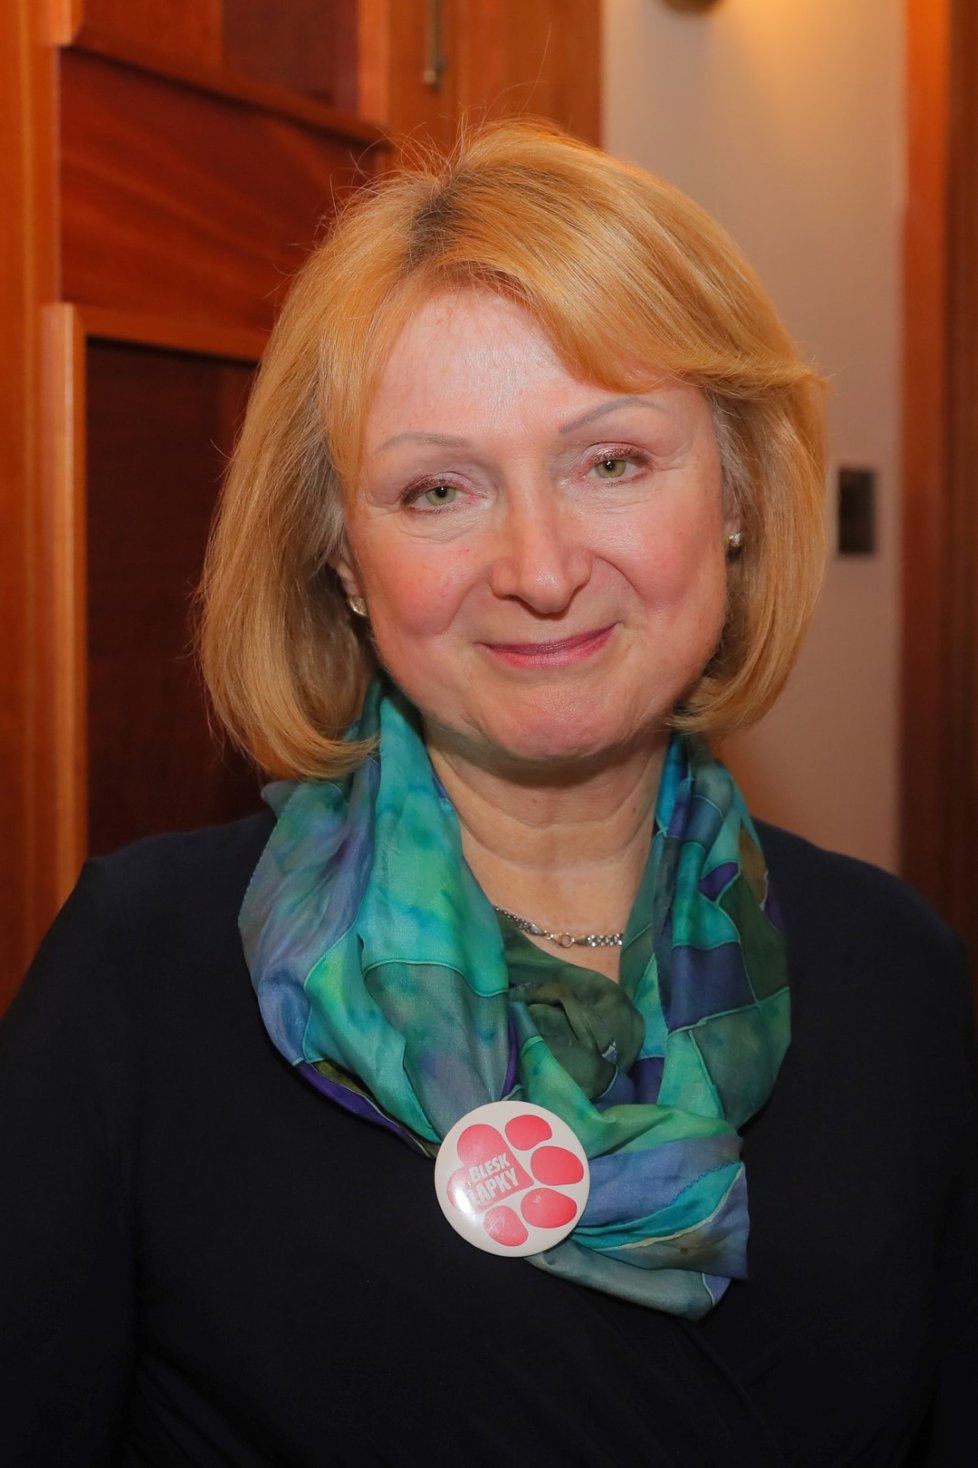 Senátorka Jitka Seitlová (KDU-ČSL) s odznakem Blesk Tlapky. (30. 1. 2020)